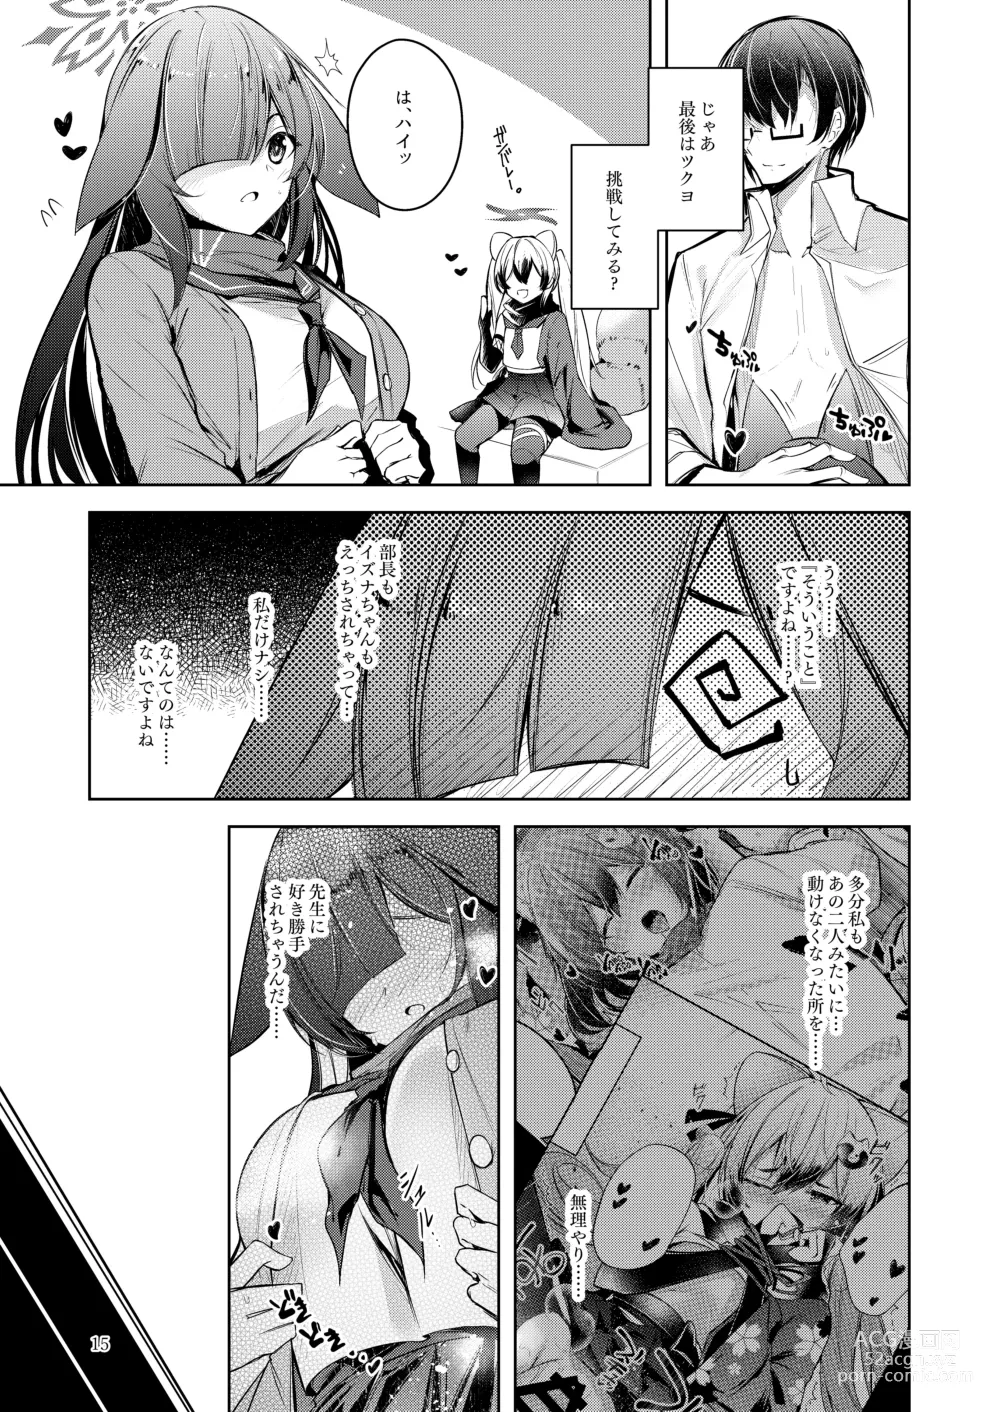 Page 16 of doujinshi Shinobi Koishitau 2